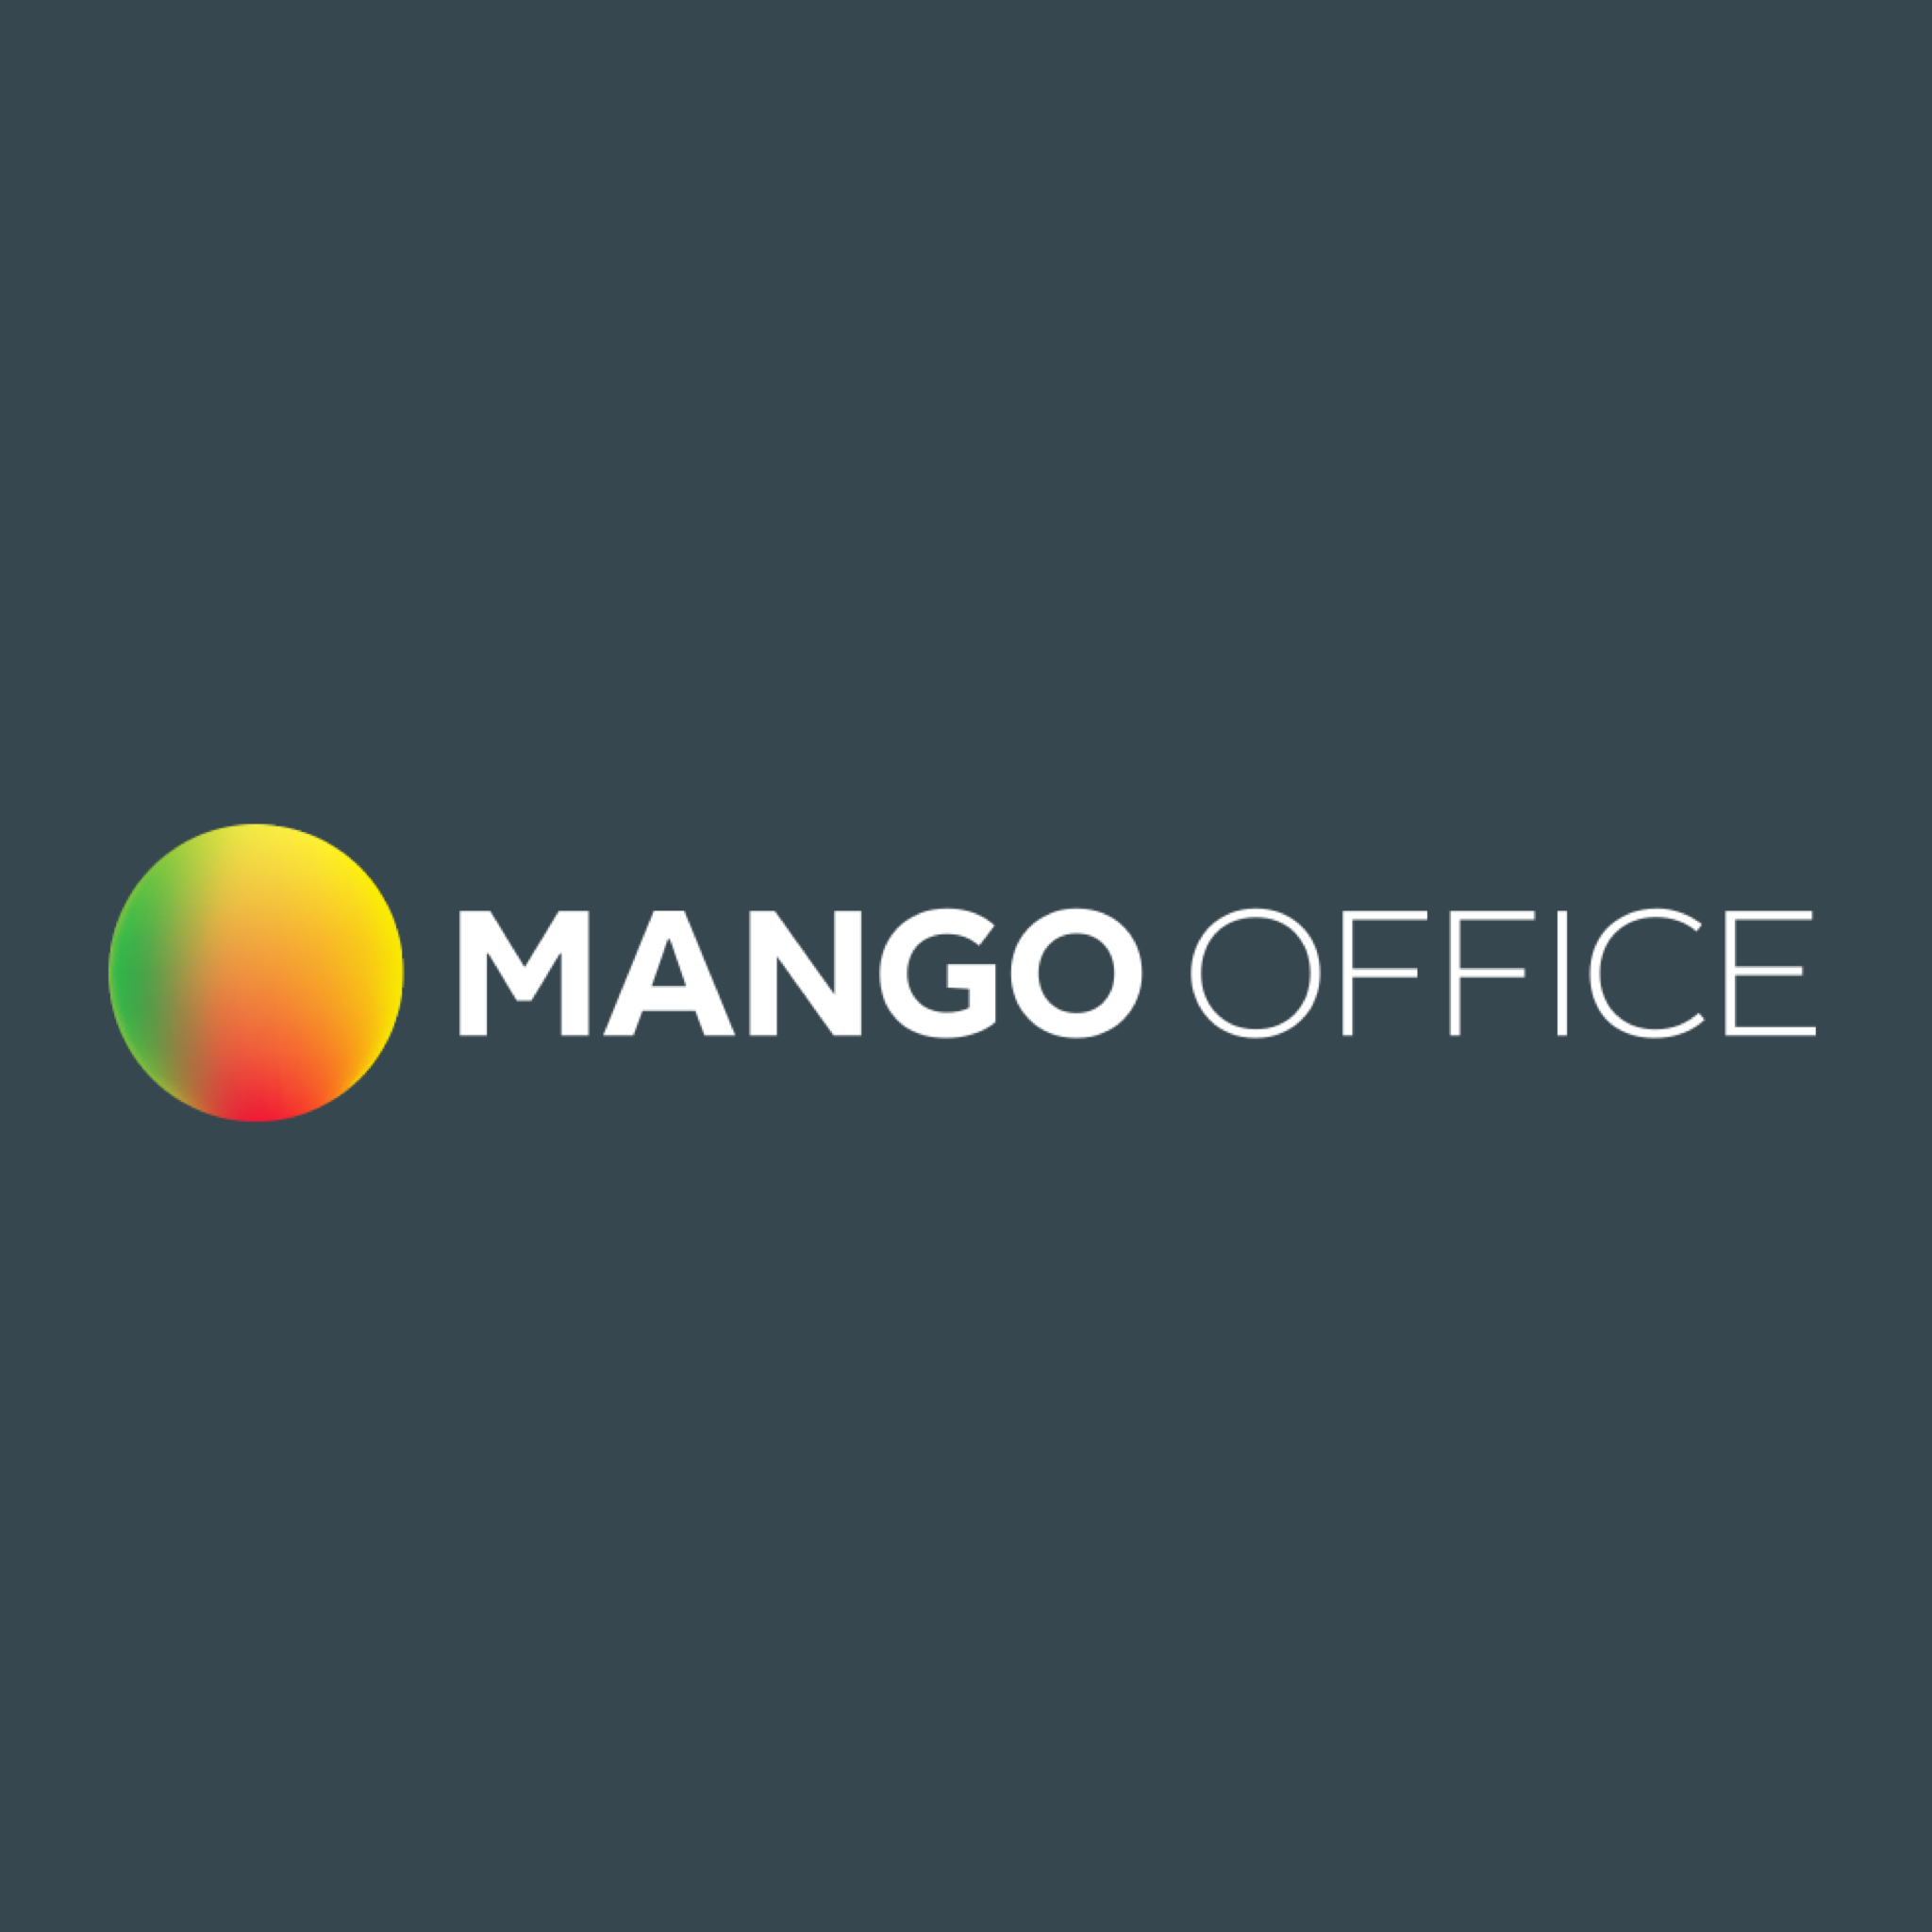 Mango office личный. Манго Телеком. Манго Телеком офис. Манго телефония логотип. Манго офис лого.